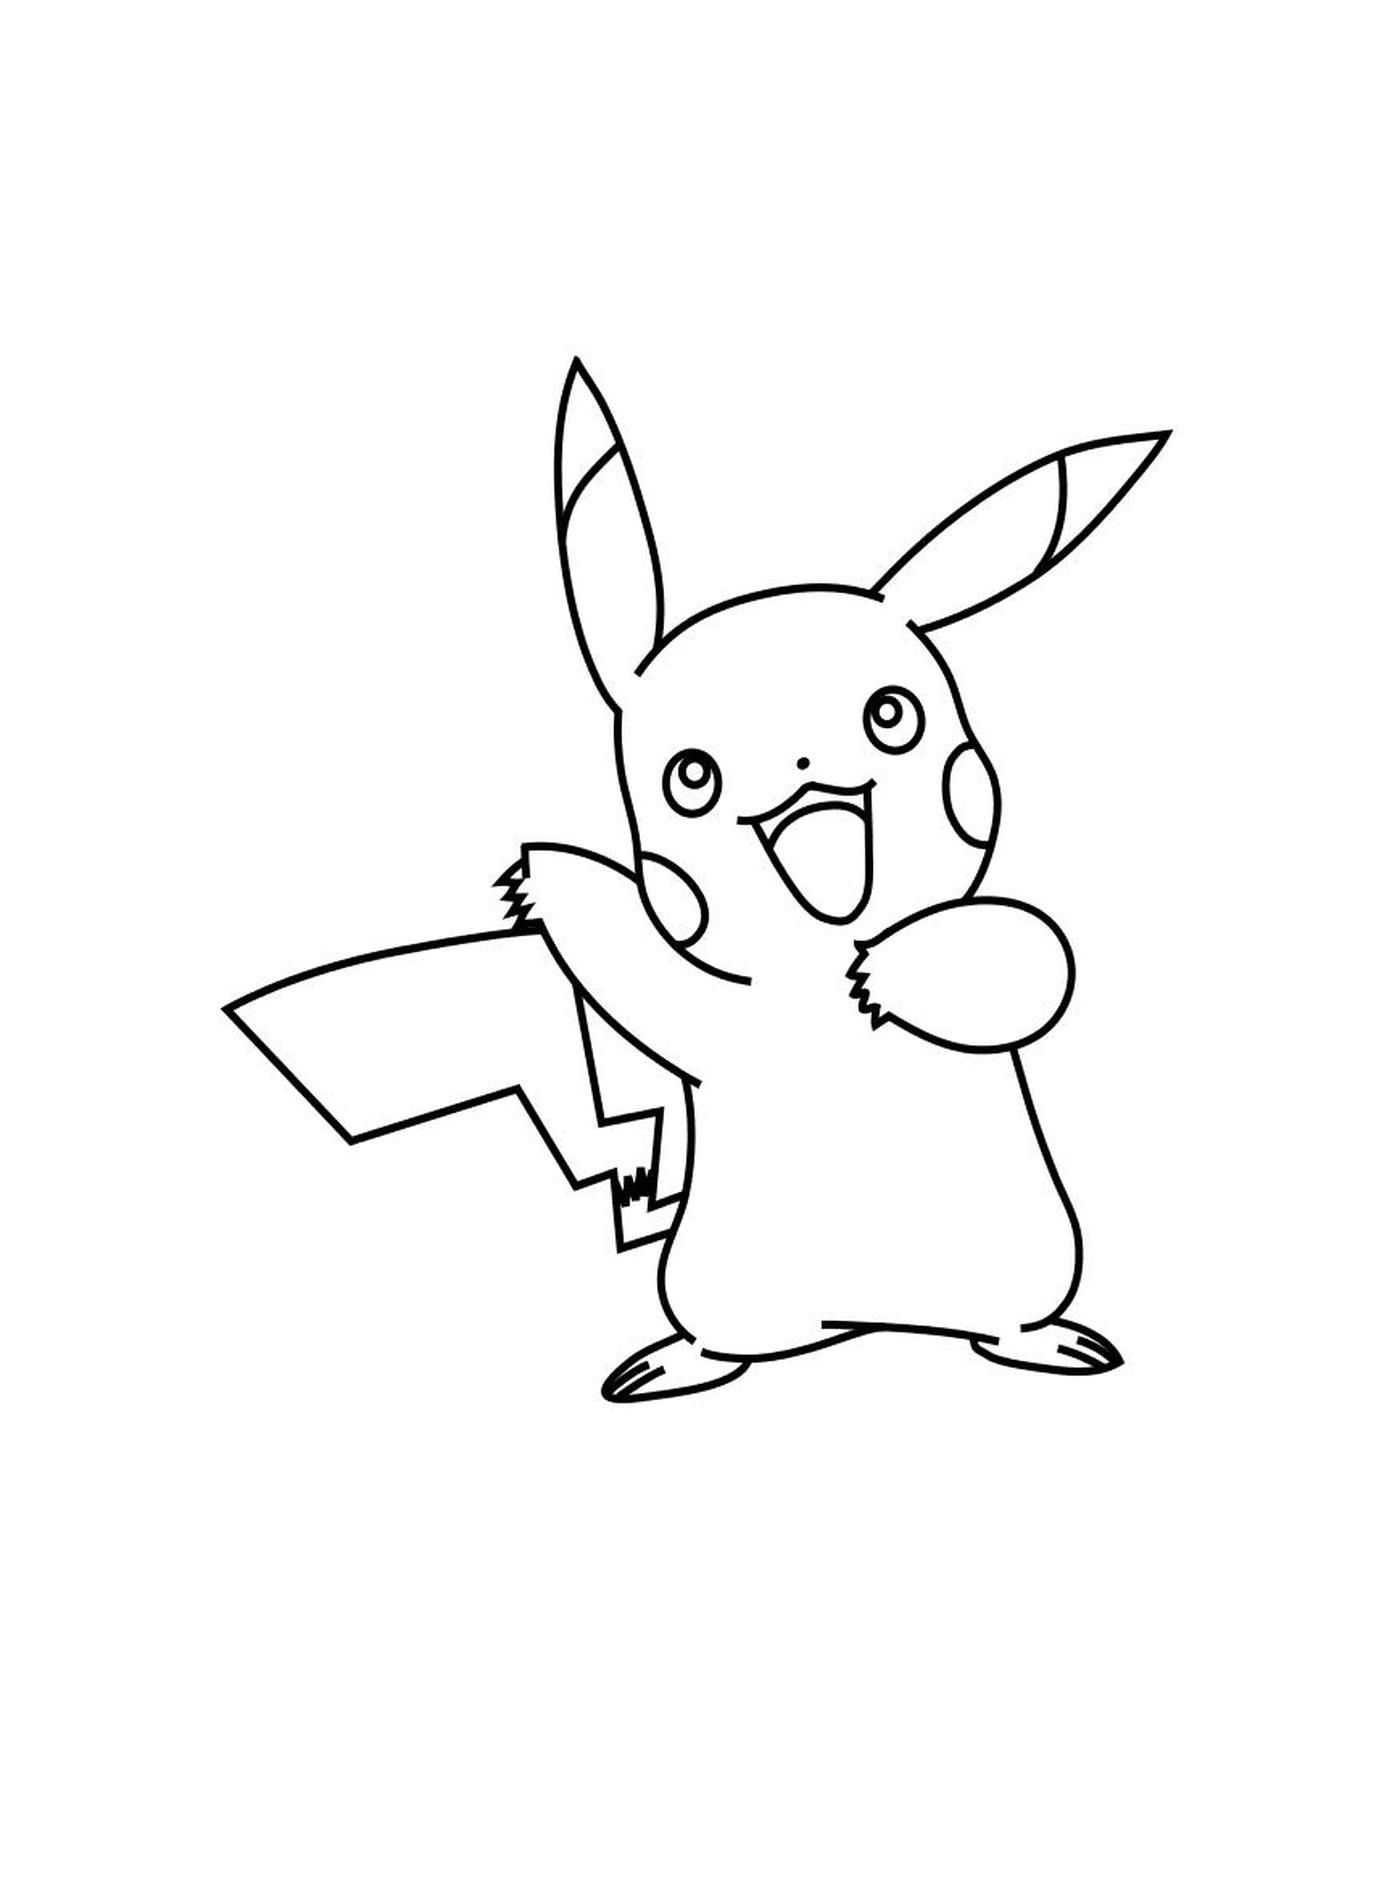  Pikachu nel mondo Pokémon XY 